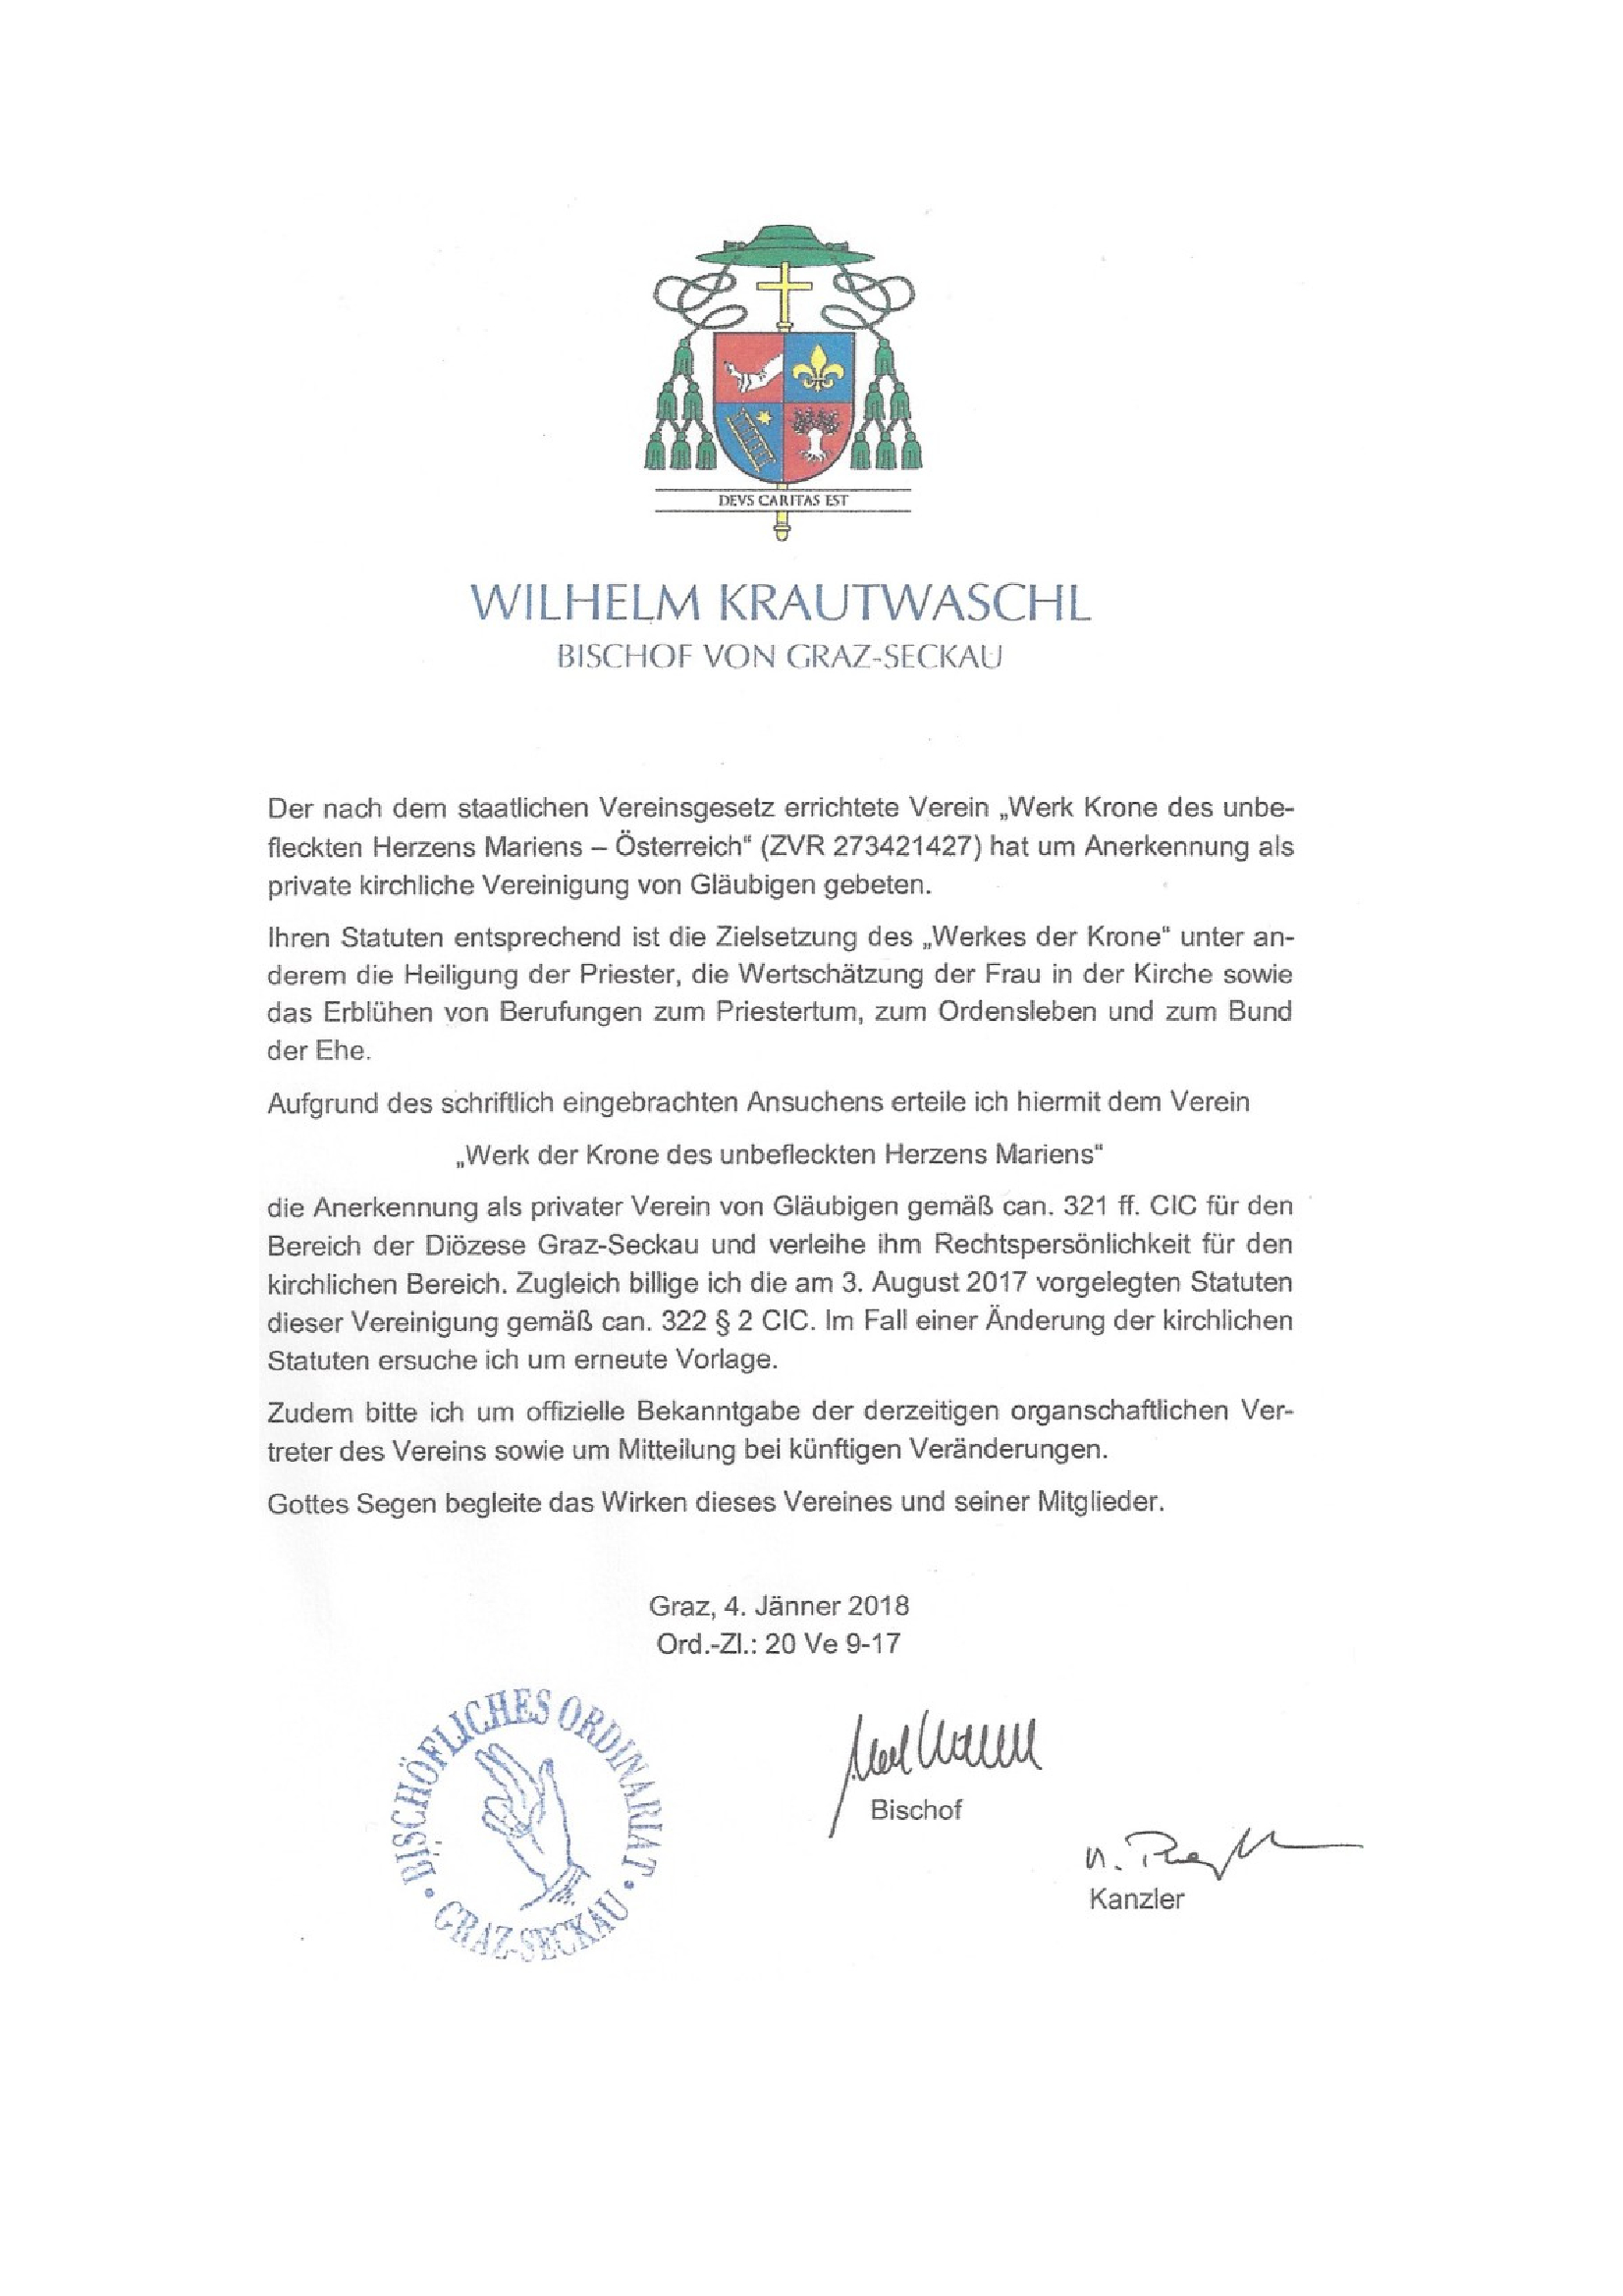 Recognition Institution in Austria